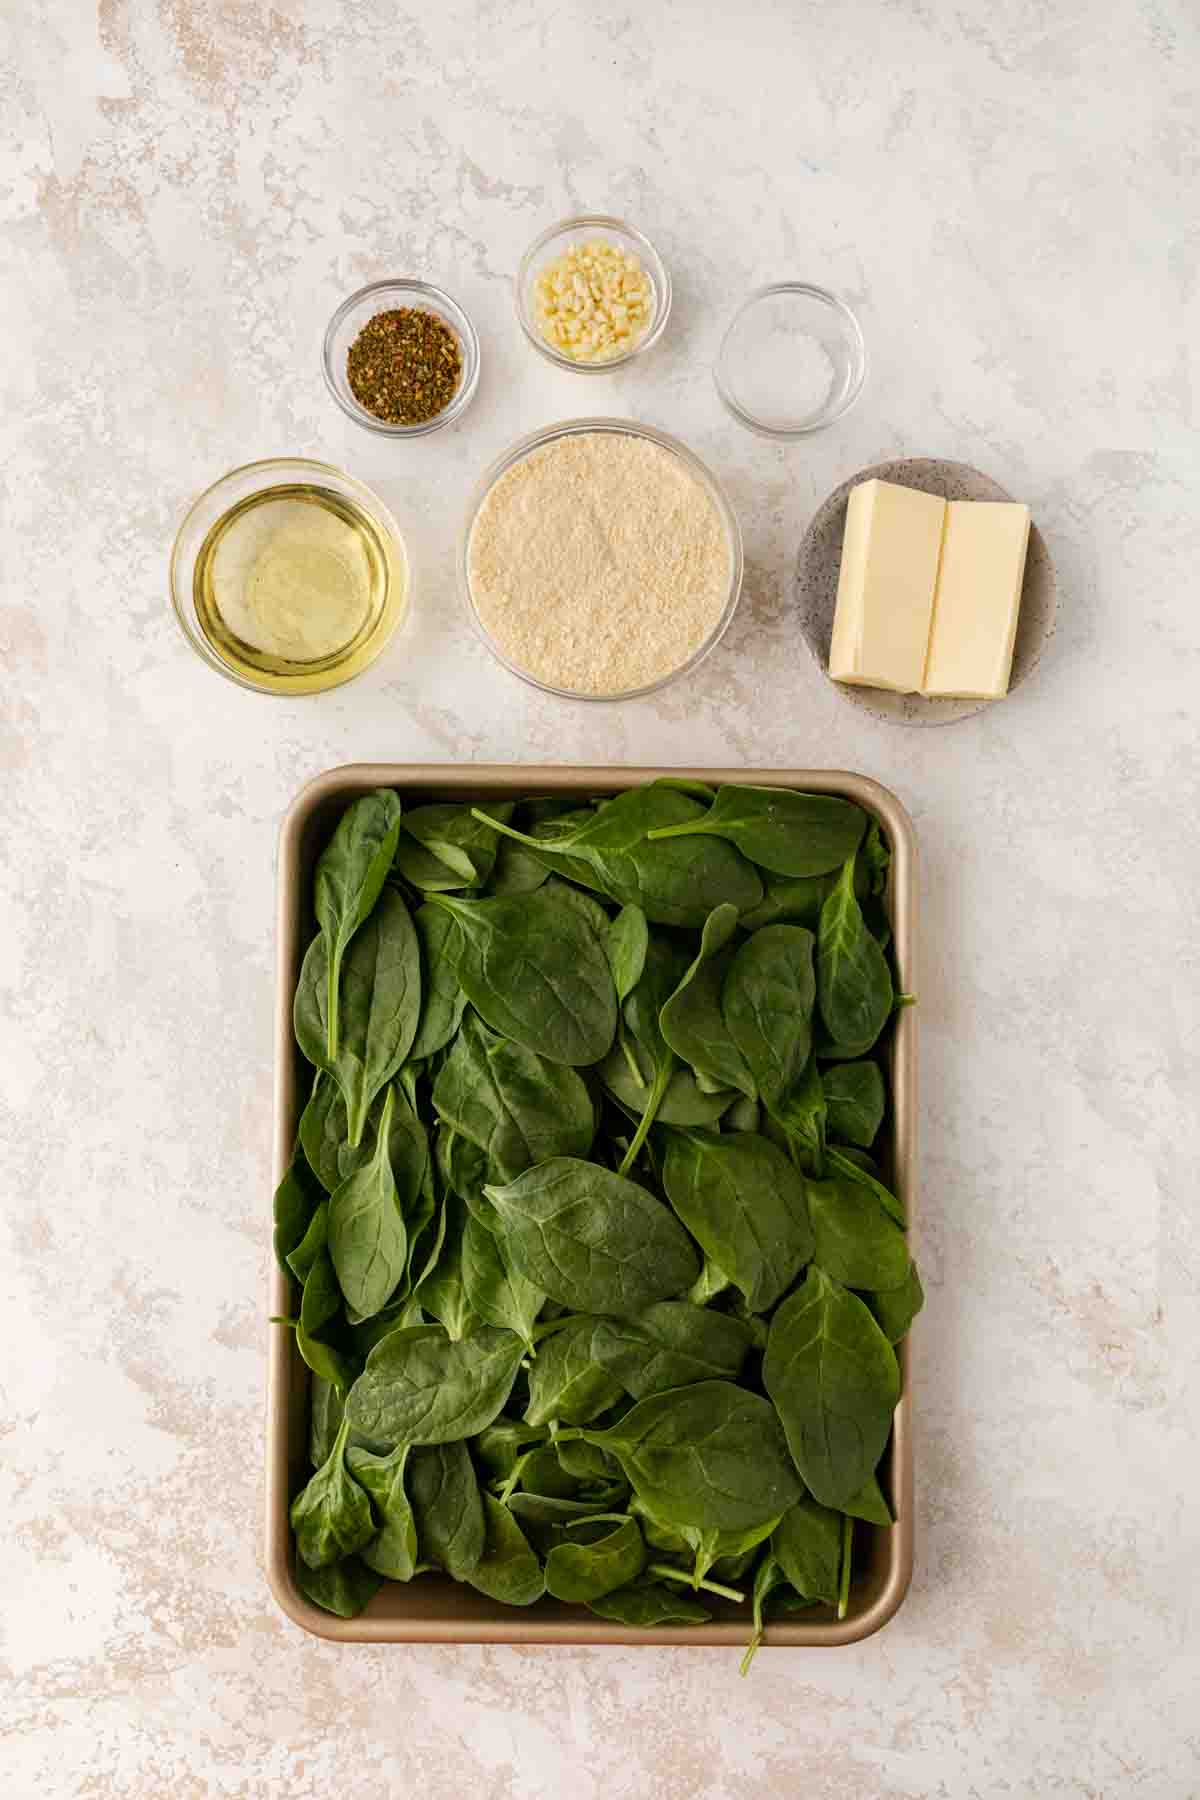 Parmesan Spinach Casserole ingredients